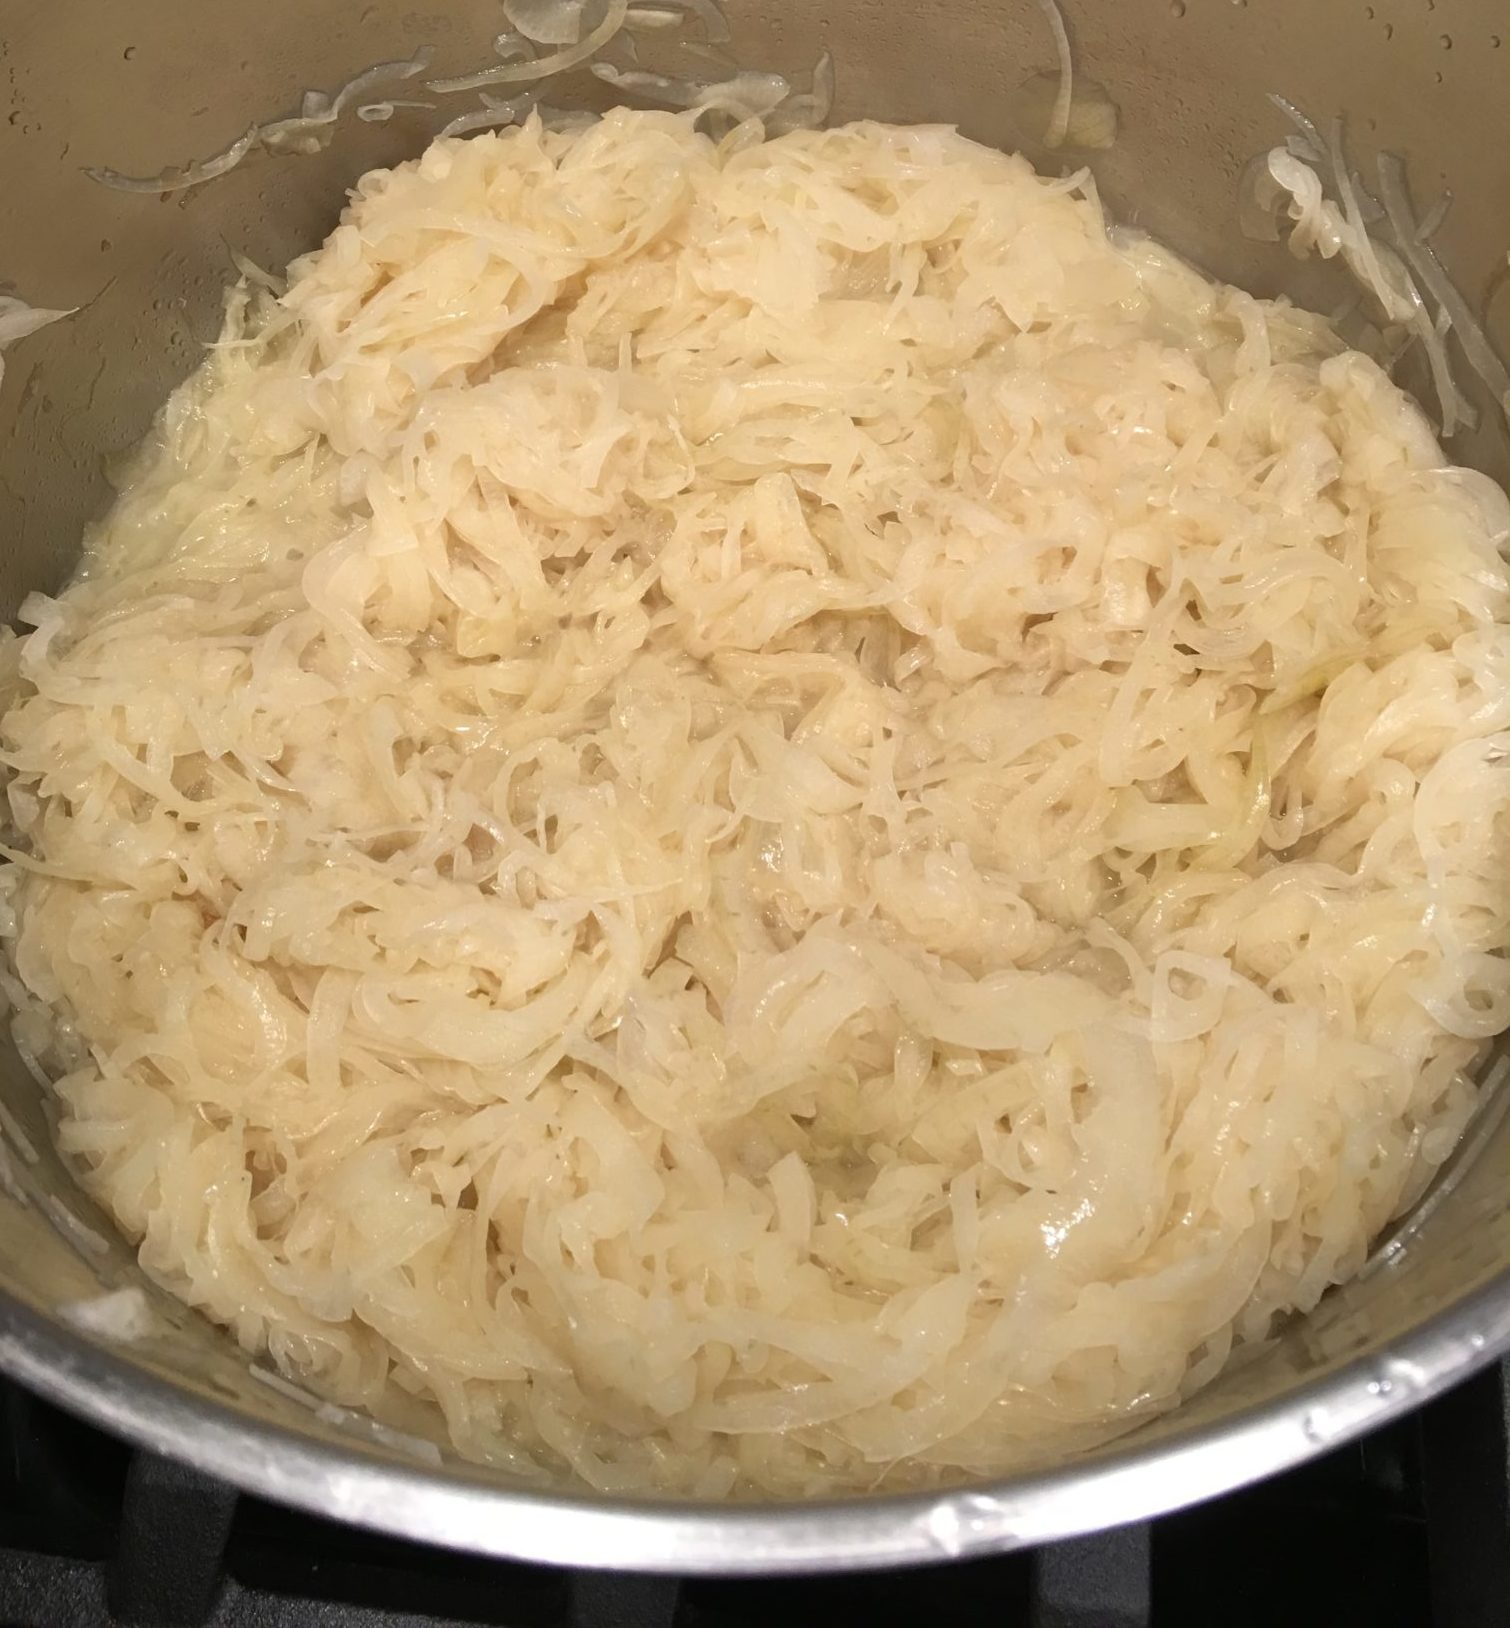 Caramelizing onions